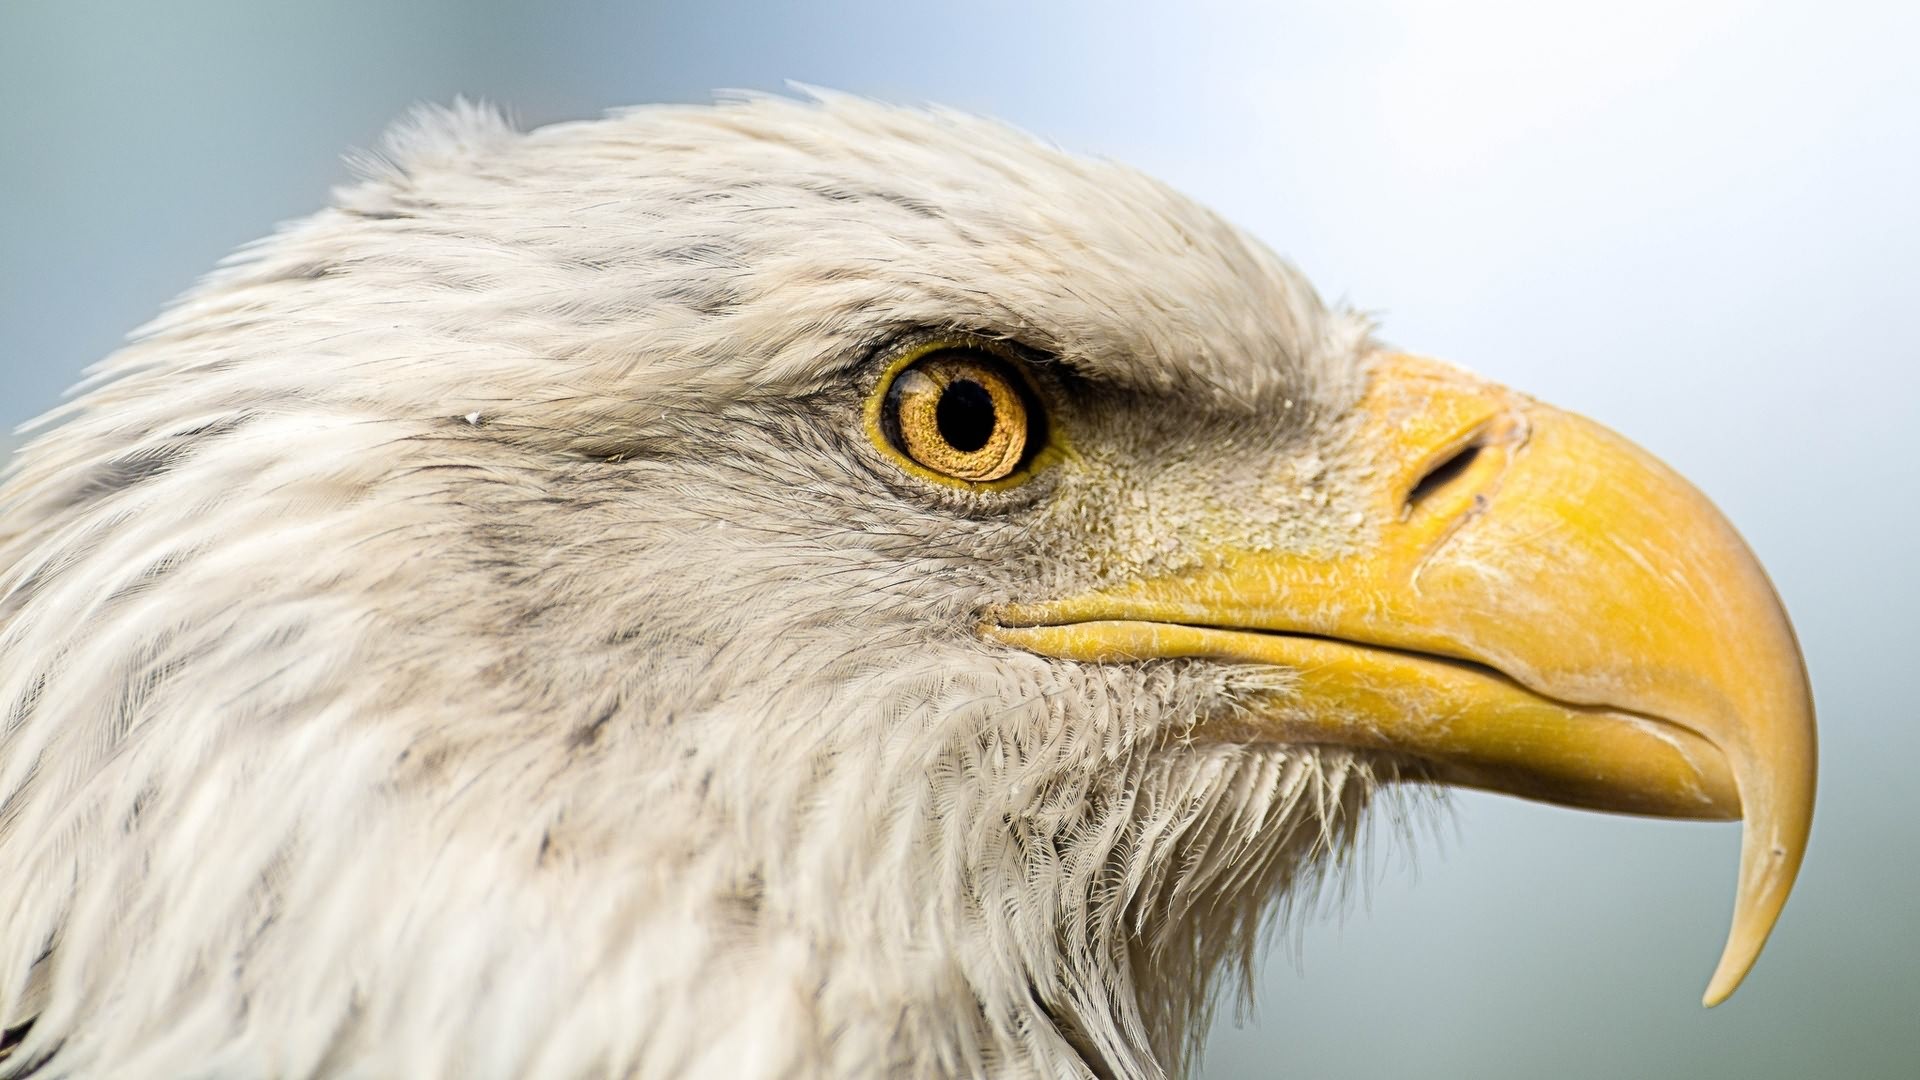 Descarga gratuita de fondo de pantalla para móvil de Águila Calva, Aves, Animales.